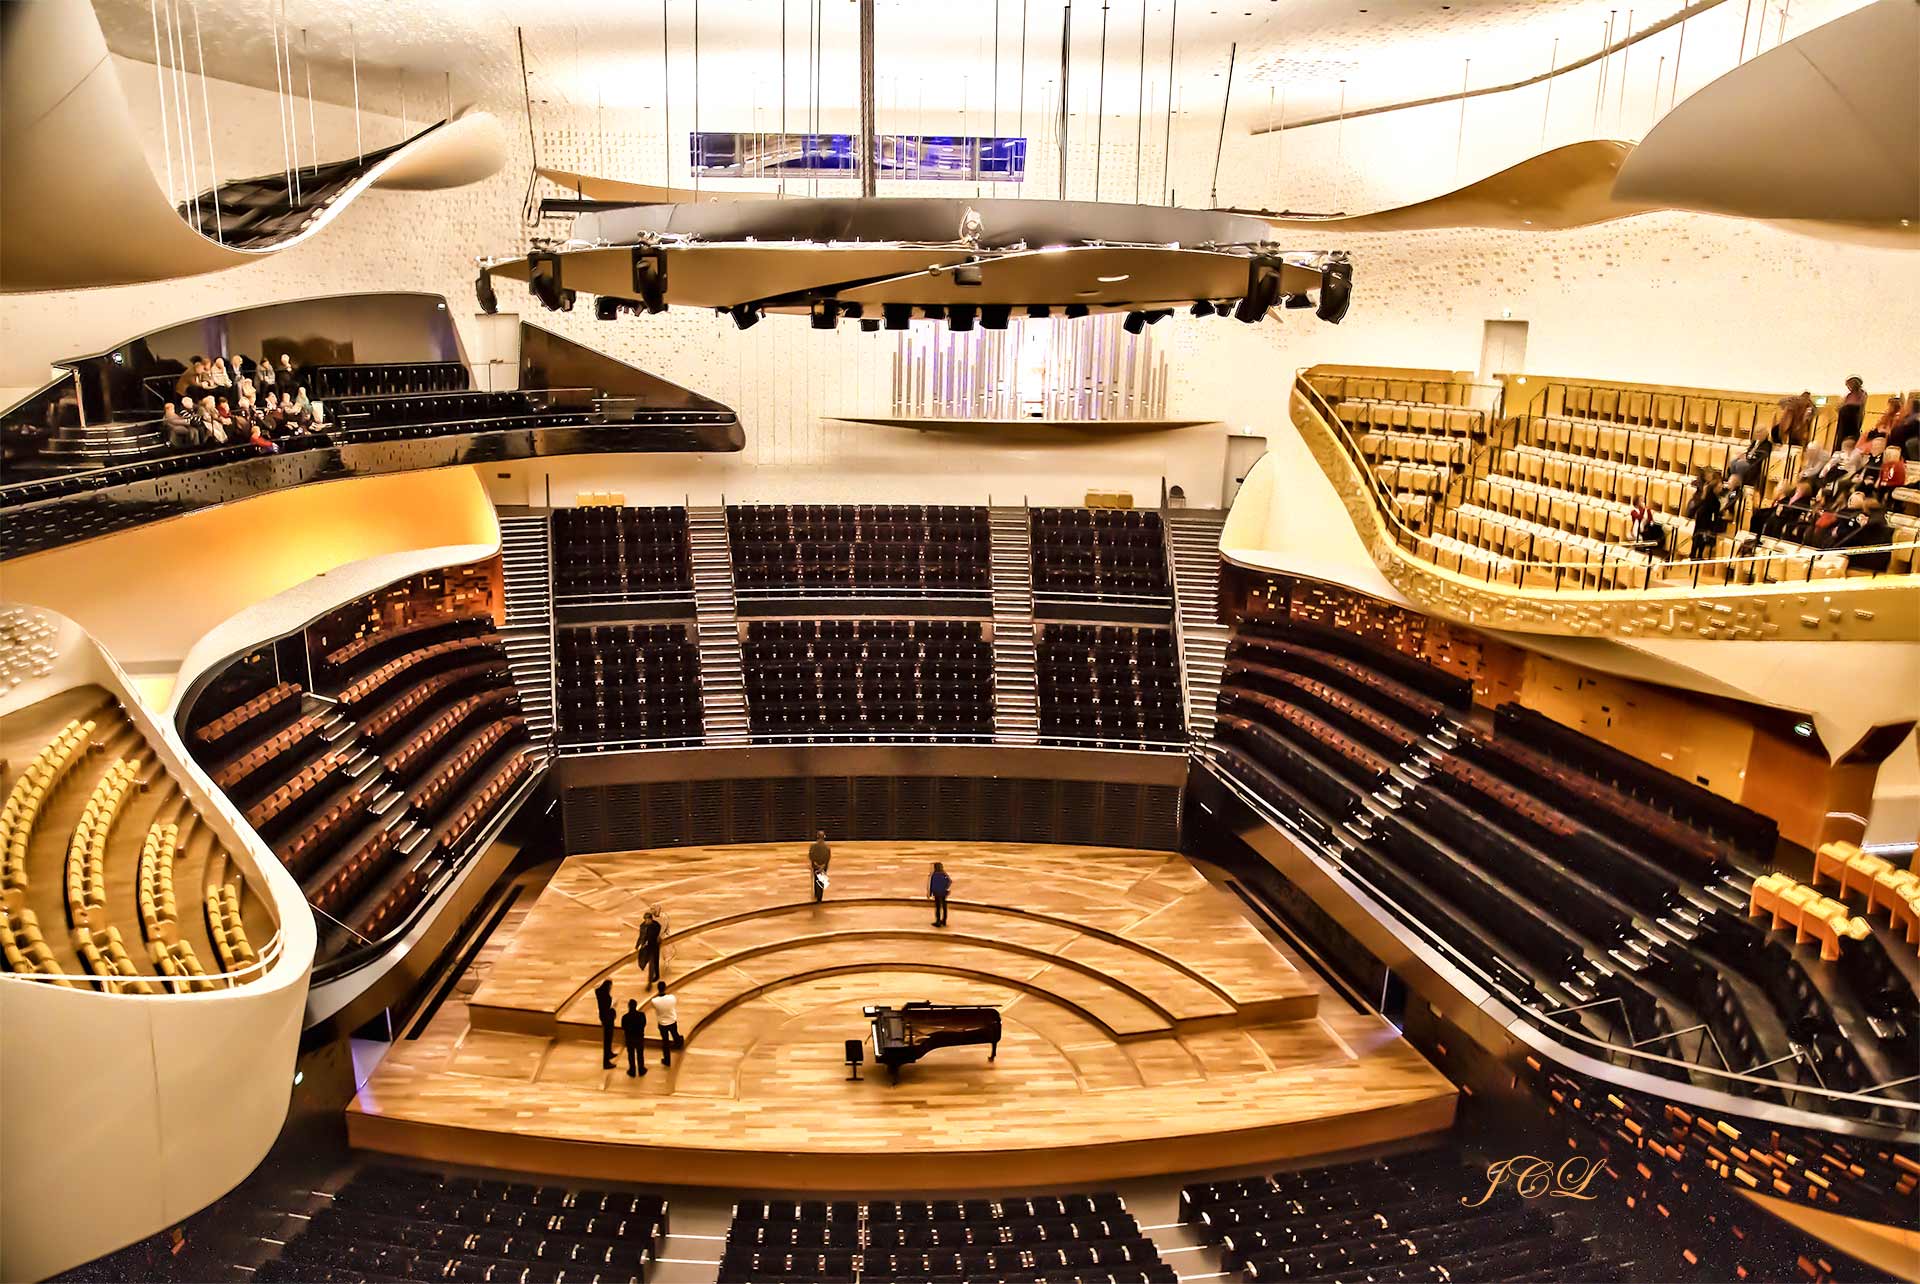 La Philharmonie de Paris la Villette bénéficie d'un équipement acoustique de très haute qualité. L'inauguration a eu lieu en janvier 2015. Sa salle de concert Pierre Boulez dispose de 2400 places. L'architecte est Jean Nouvel.